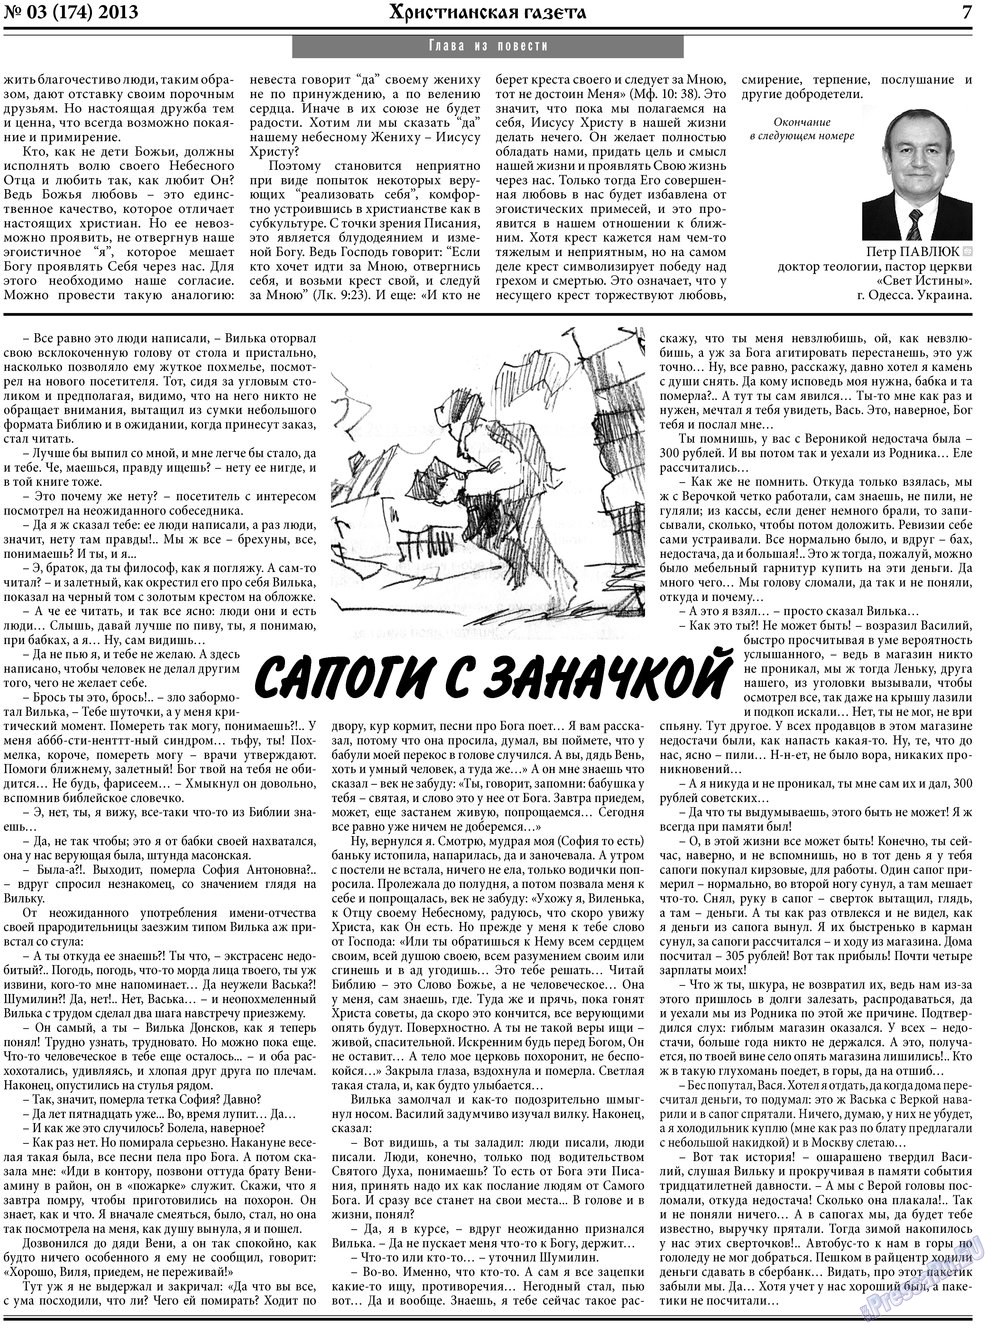 Hristianskaja gazeta (Zeitung). 2013 Jahr, Ausgabe 3, Seite 7